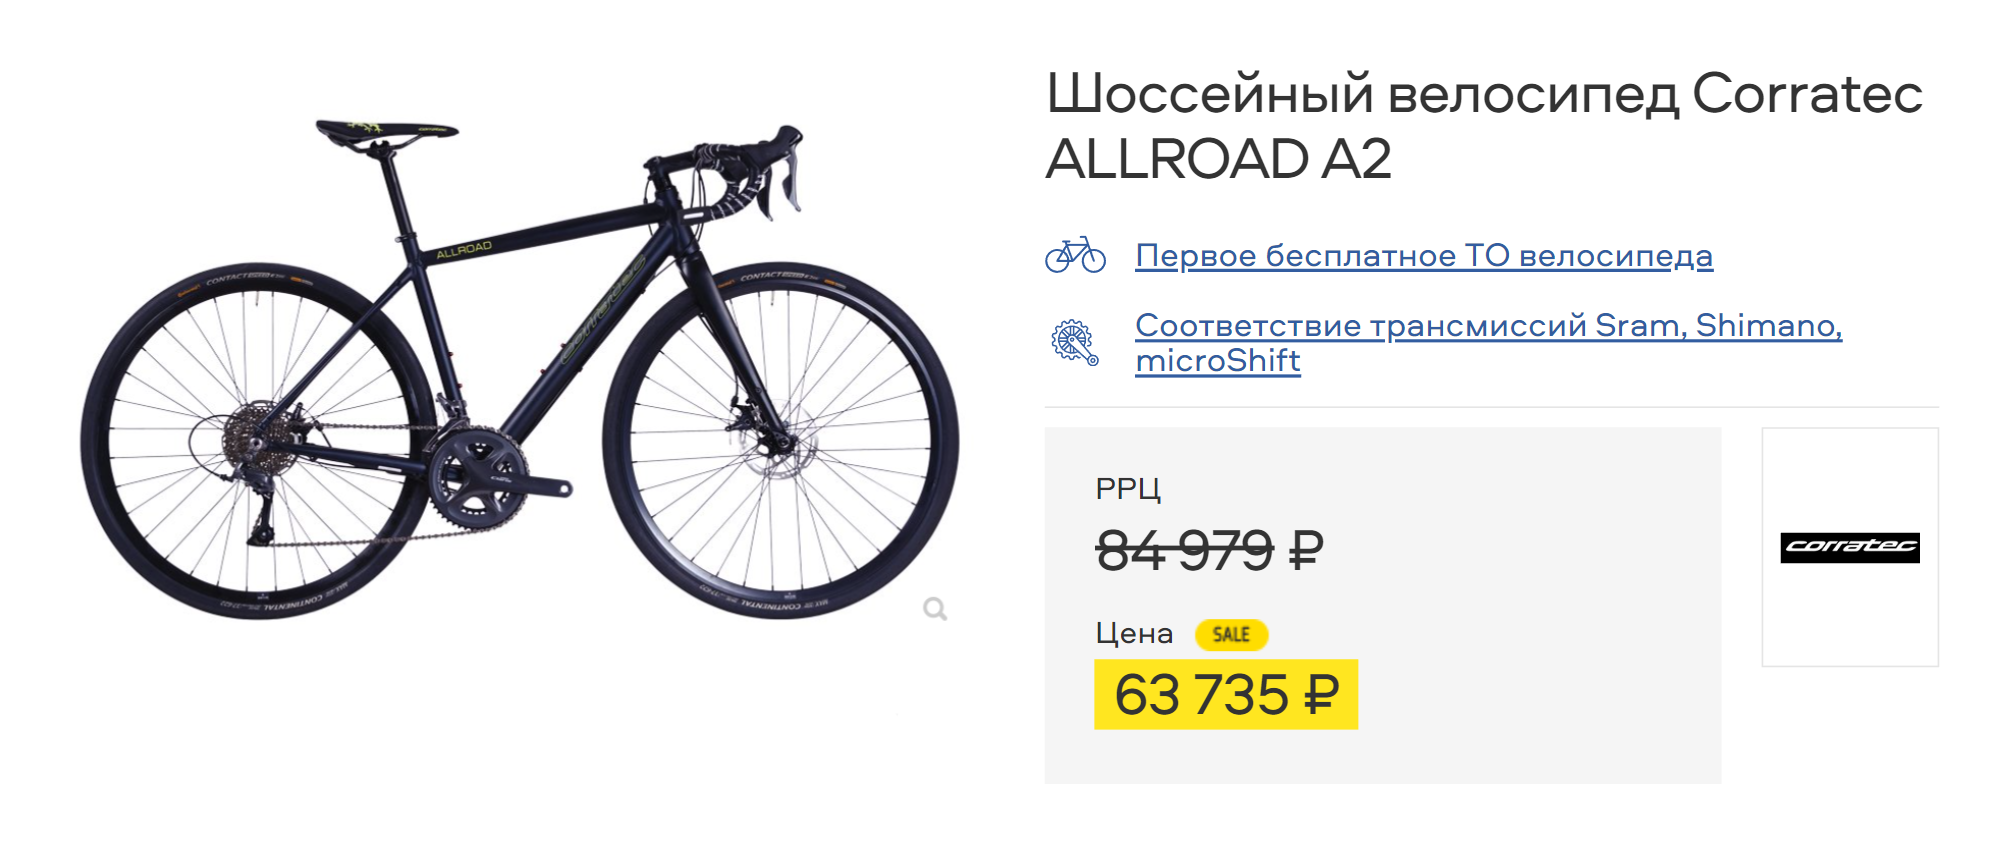 Сейчас похожий велосипед тоже можно купить со скидкой — за 63 735 ₽. Источник: trial⁠-⁠sport.ru